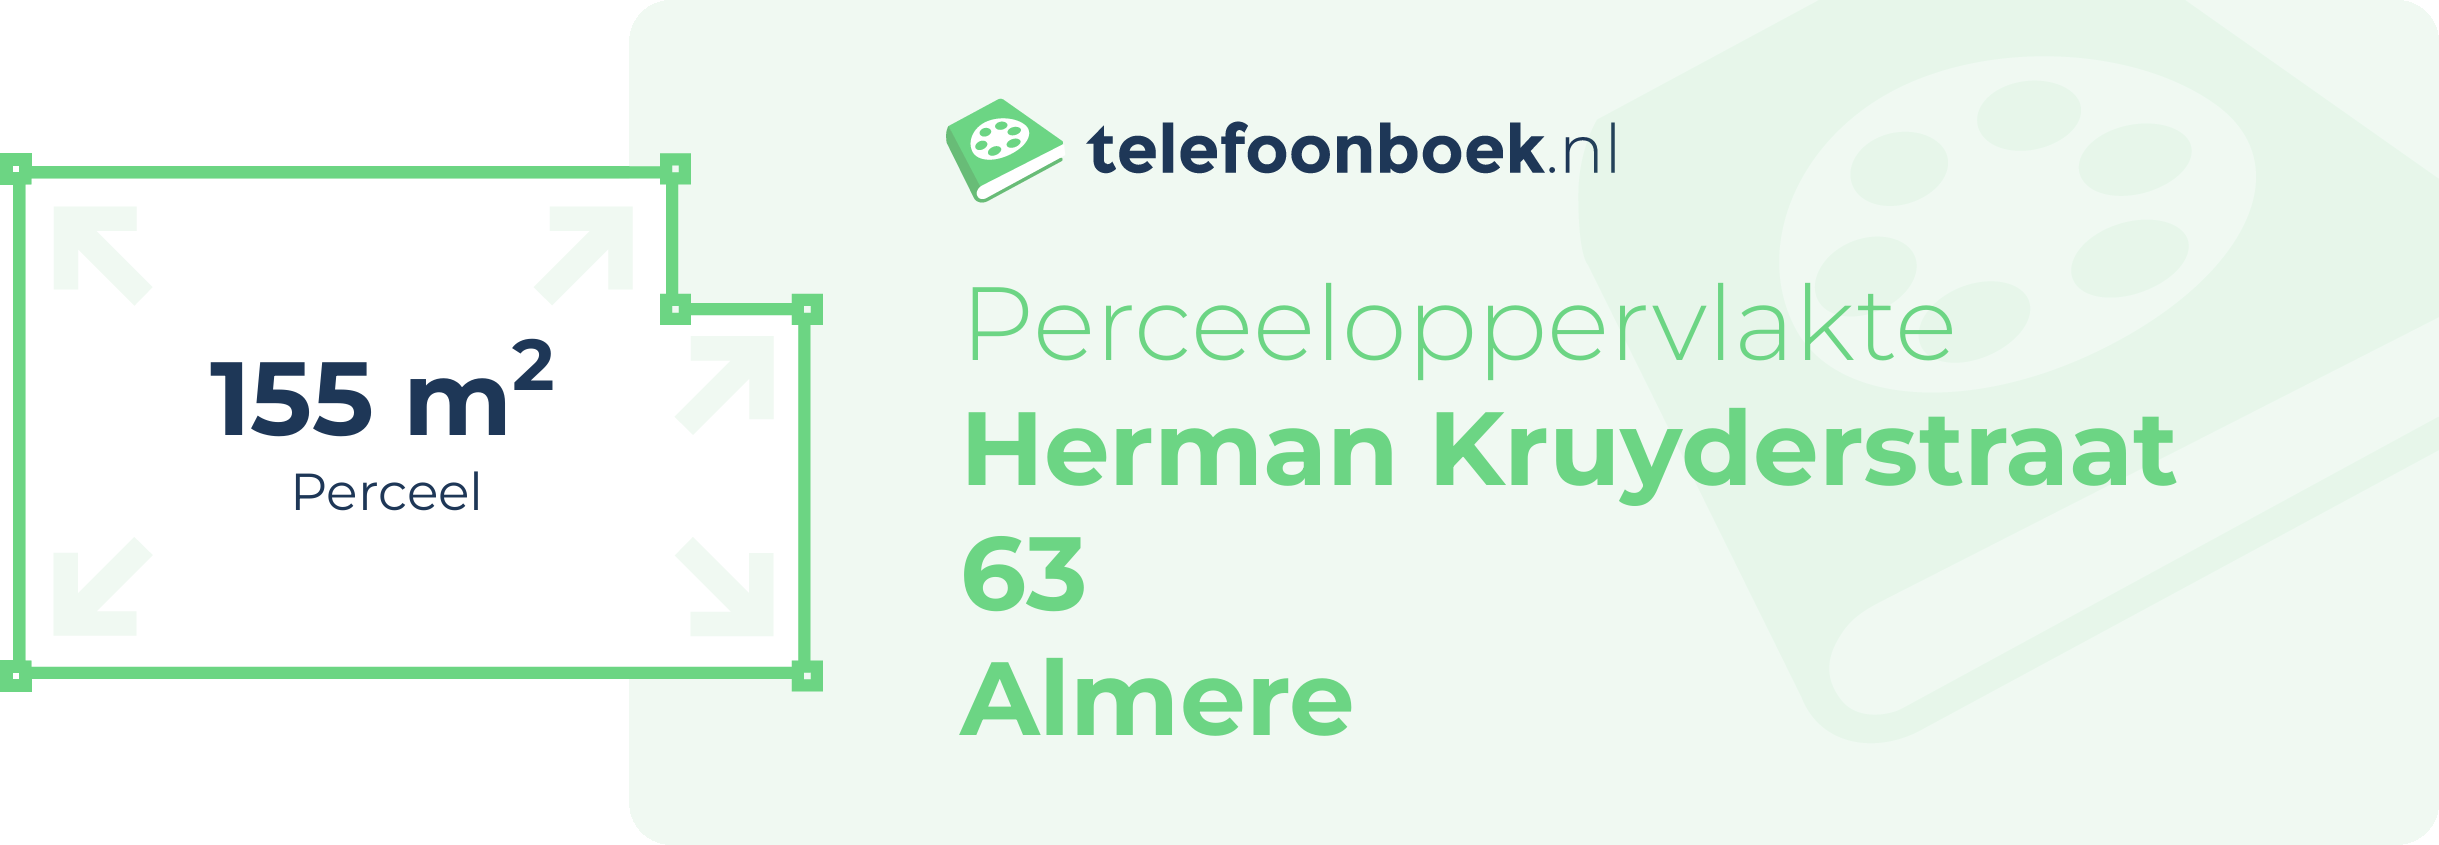 Perceeloppervlakte Herman Kruyderstraat 63 Almere